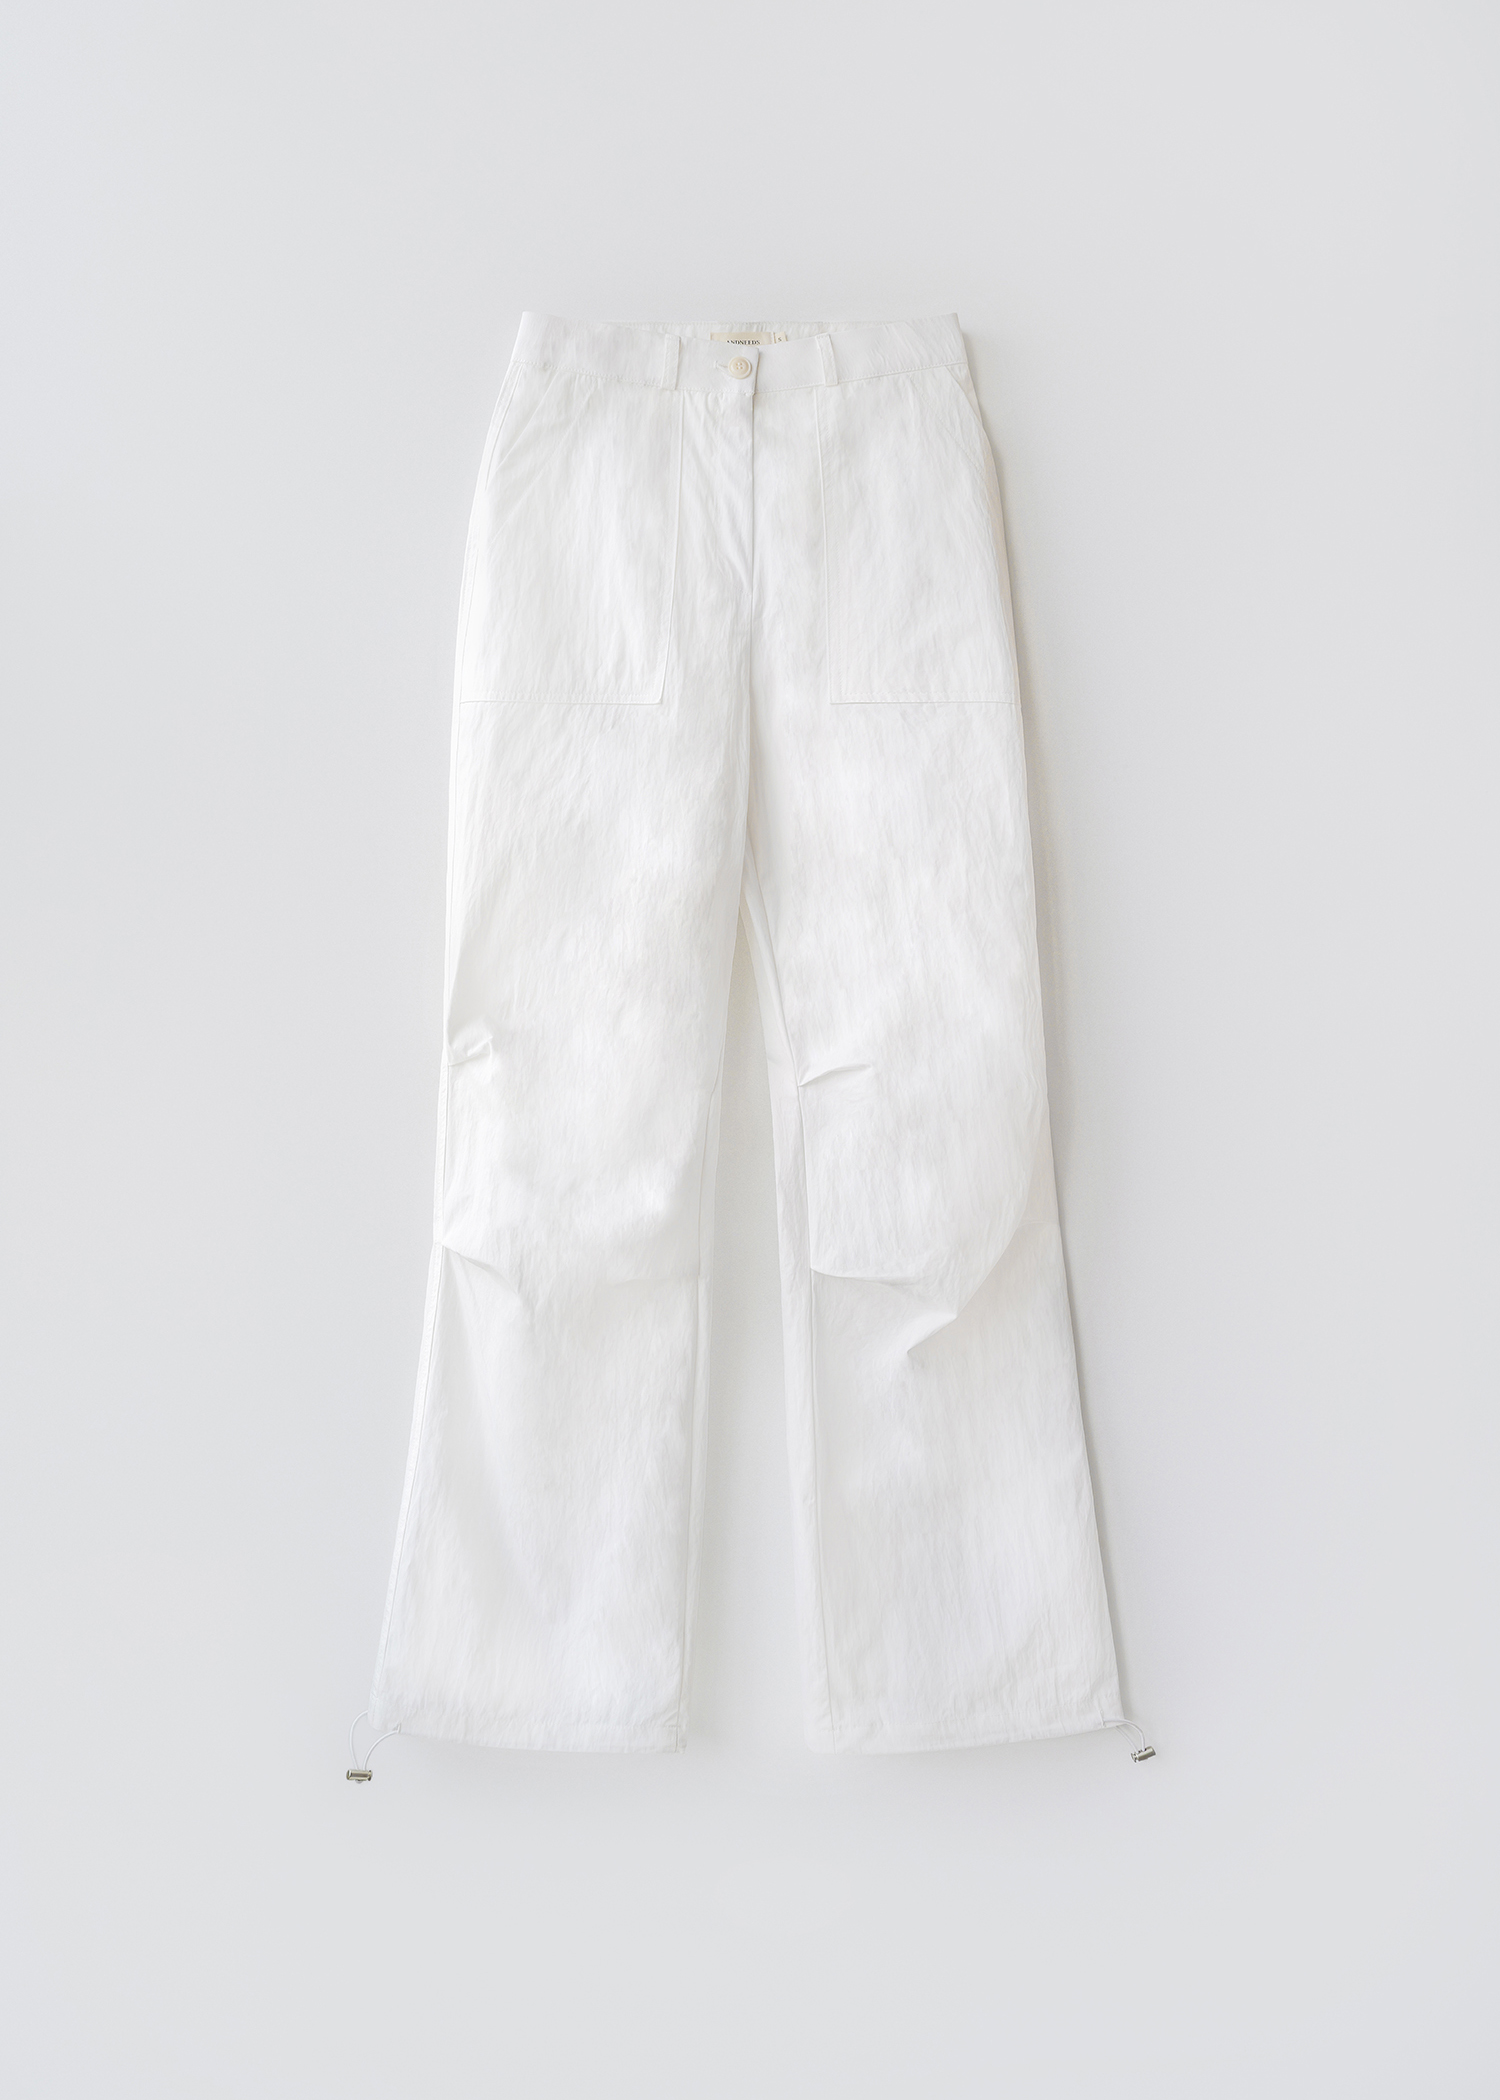 [4/24 순차발송 - 3차] Easy nylon pants (white)